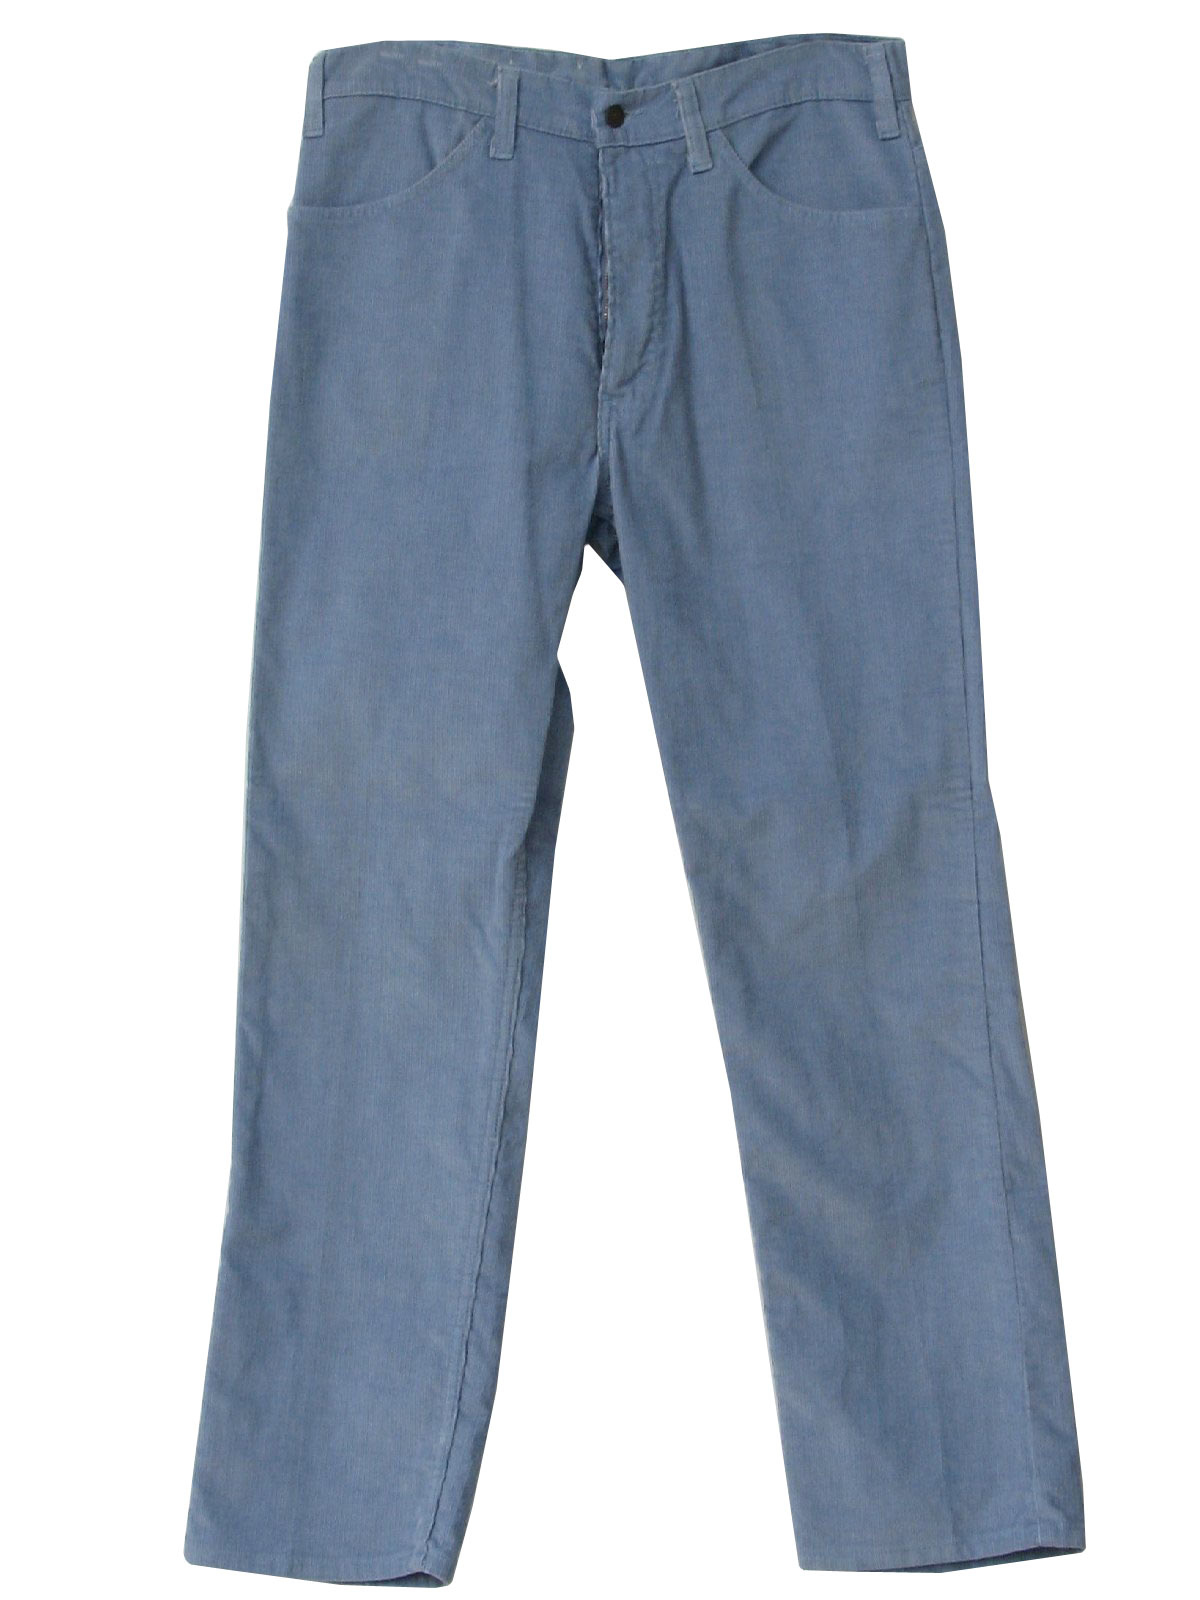 1980's Retro Pants: Early 80s -Levis- Mens pale blue cotton pinwale ...